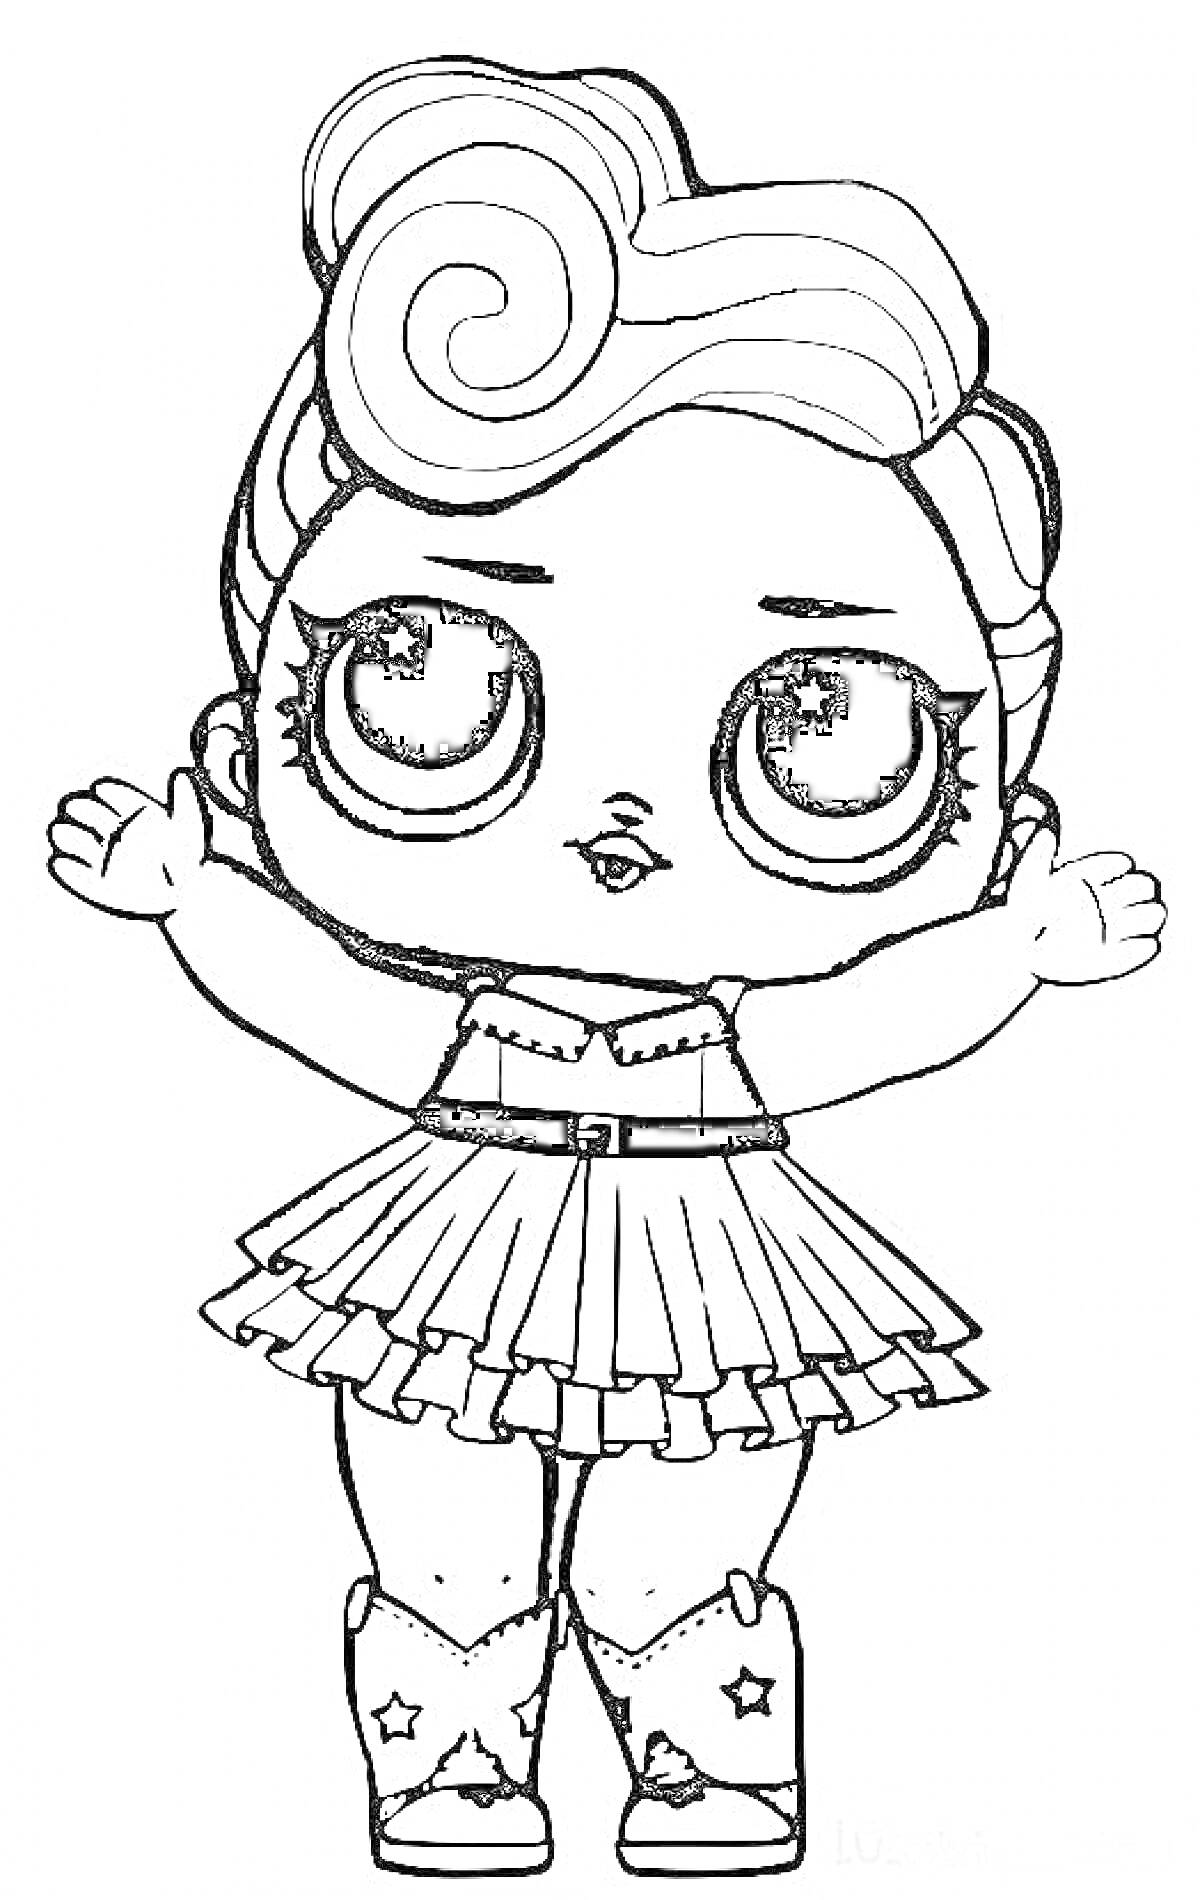 Раскраска Кукла Лол с большими глазами в пышной юбке и сапогах, с завитком волос